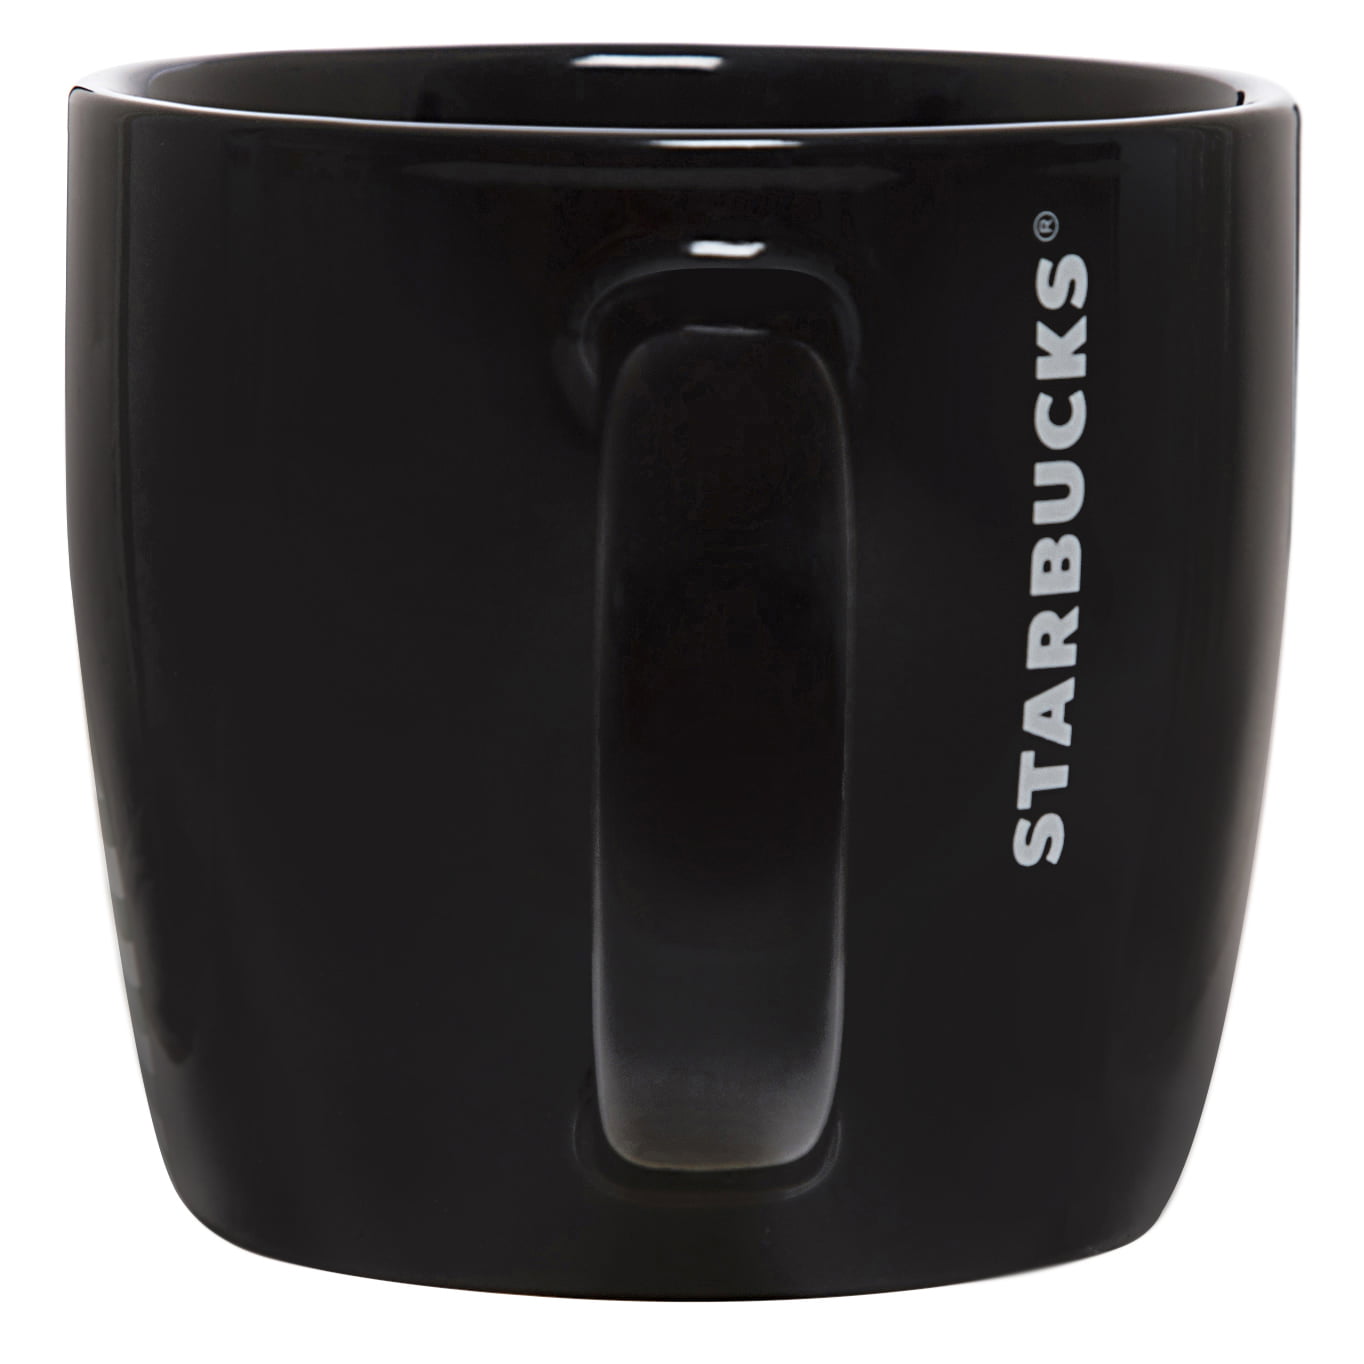 Starbucks 14oz White Ceramic Mug 